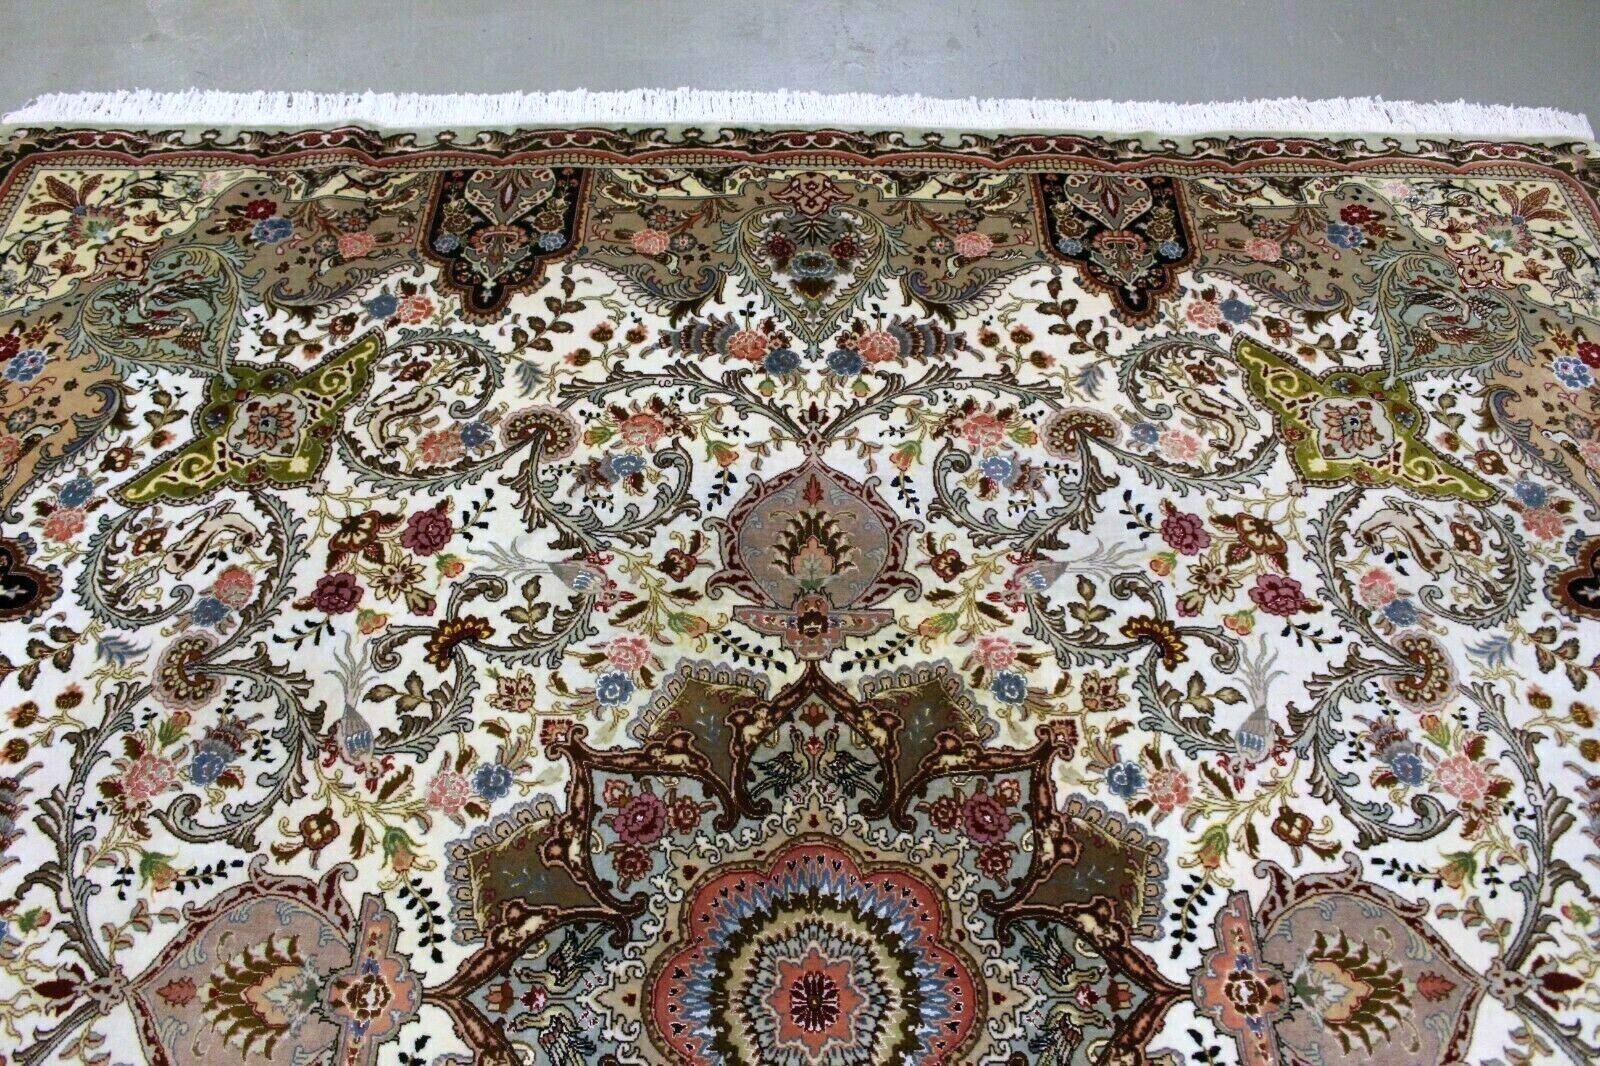 Dieser bezaubernde, in den 1970er Jahren gefertigte Teppich verbindet Tradition und Opulenz nahtlos miteinander. Hier sind die wichtigsten Merkmale, die es zu einem wahren Kunstwerk machen:

MATERIALIEN:
50 Raj Tabriz-Teppich. Basis Wolle: Der